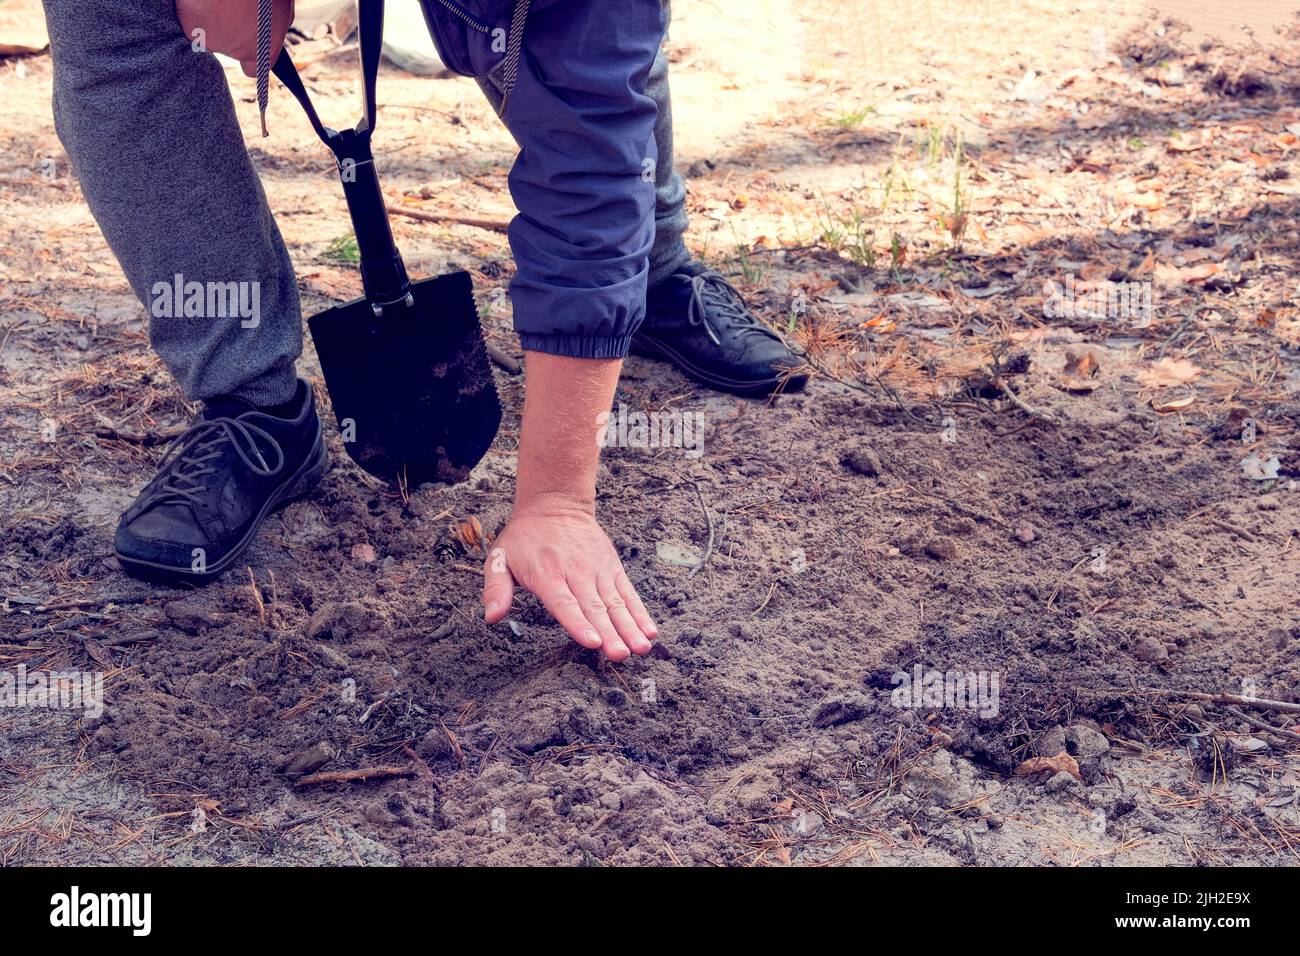 El hombre sumerge el suelo con una pala en el bosque. Pala negra en manos humanas. Foto de stock